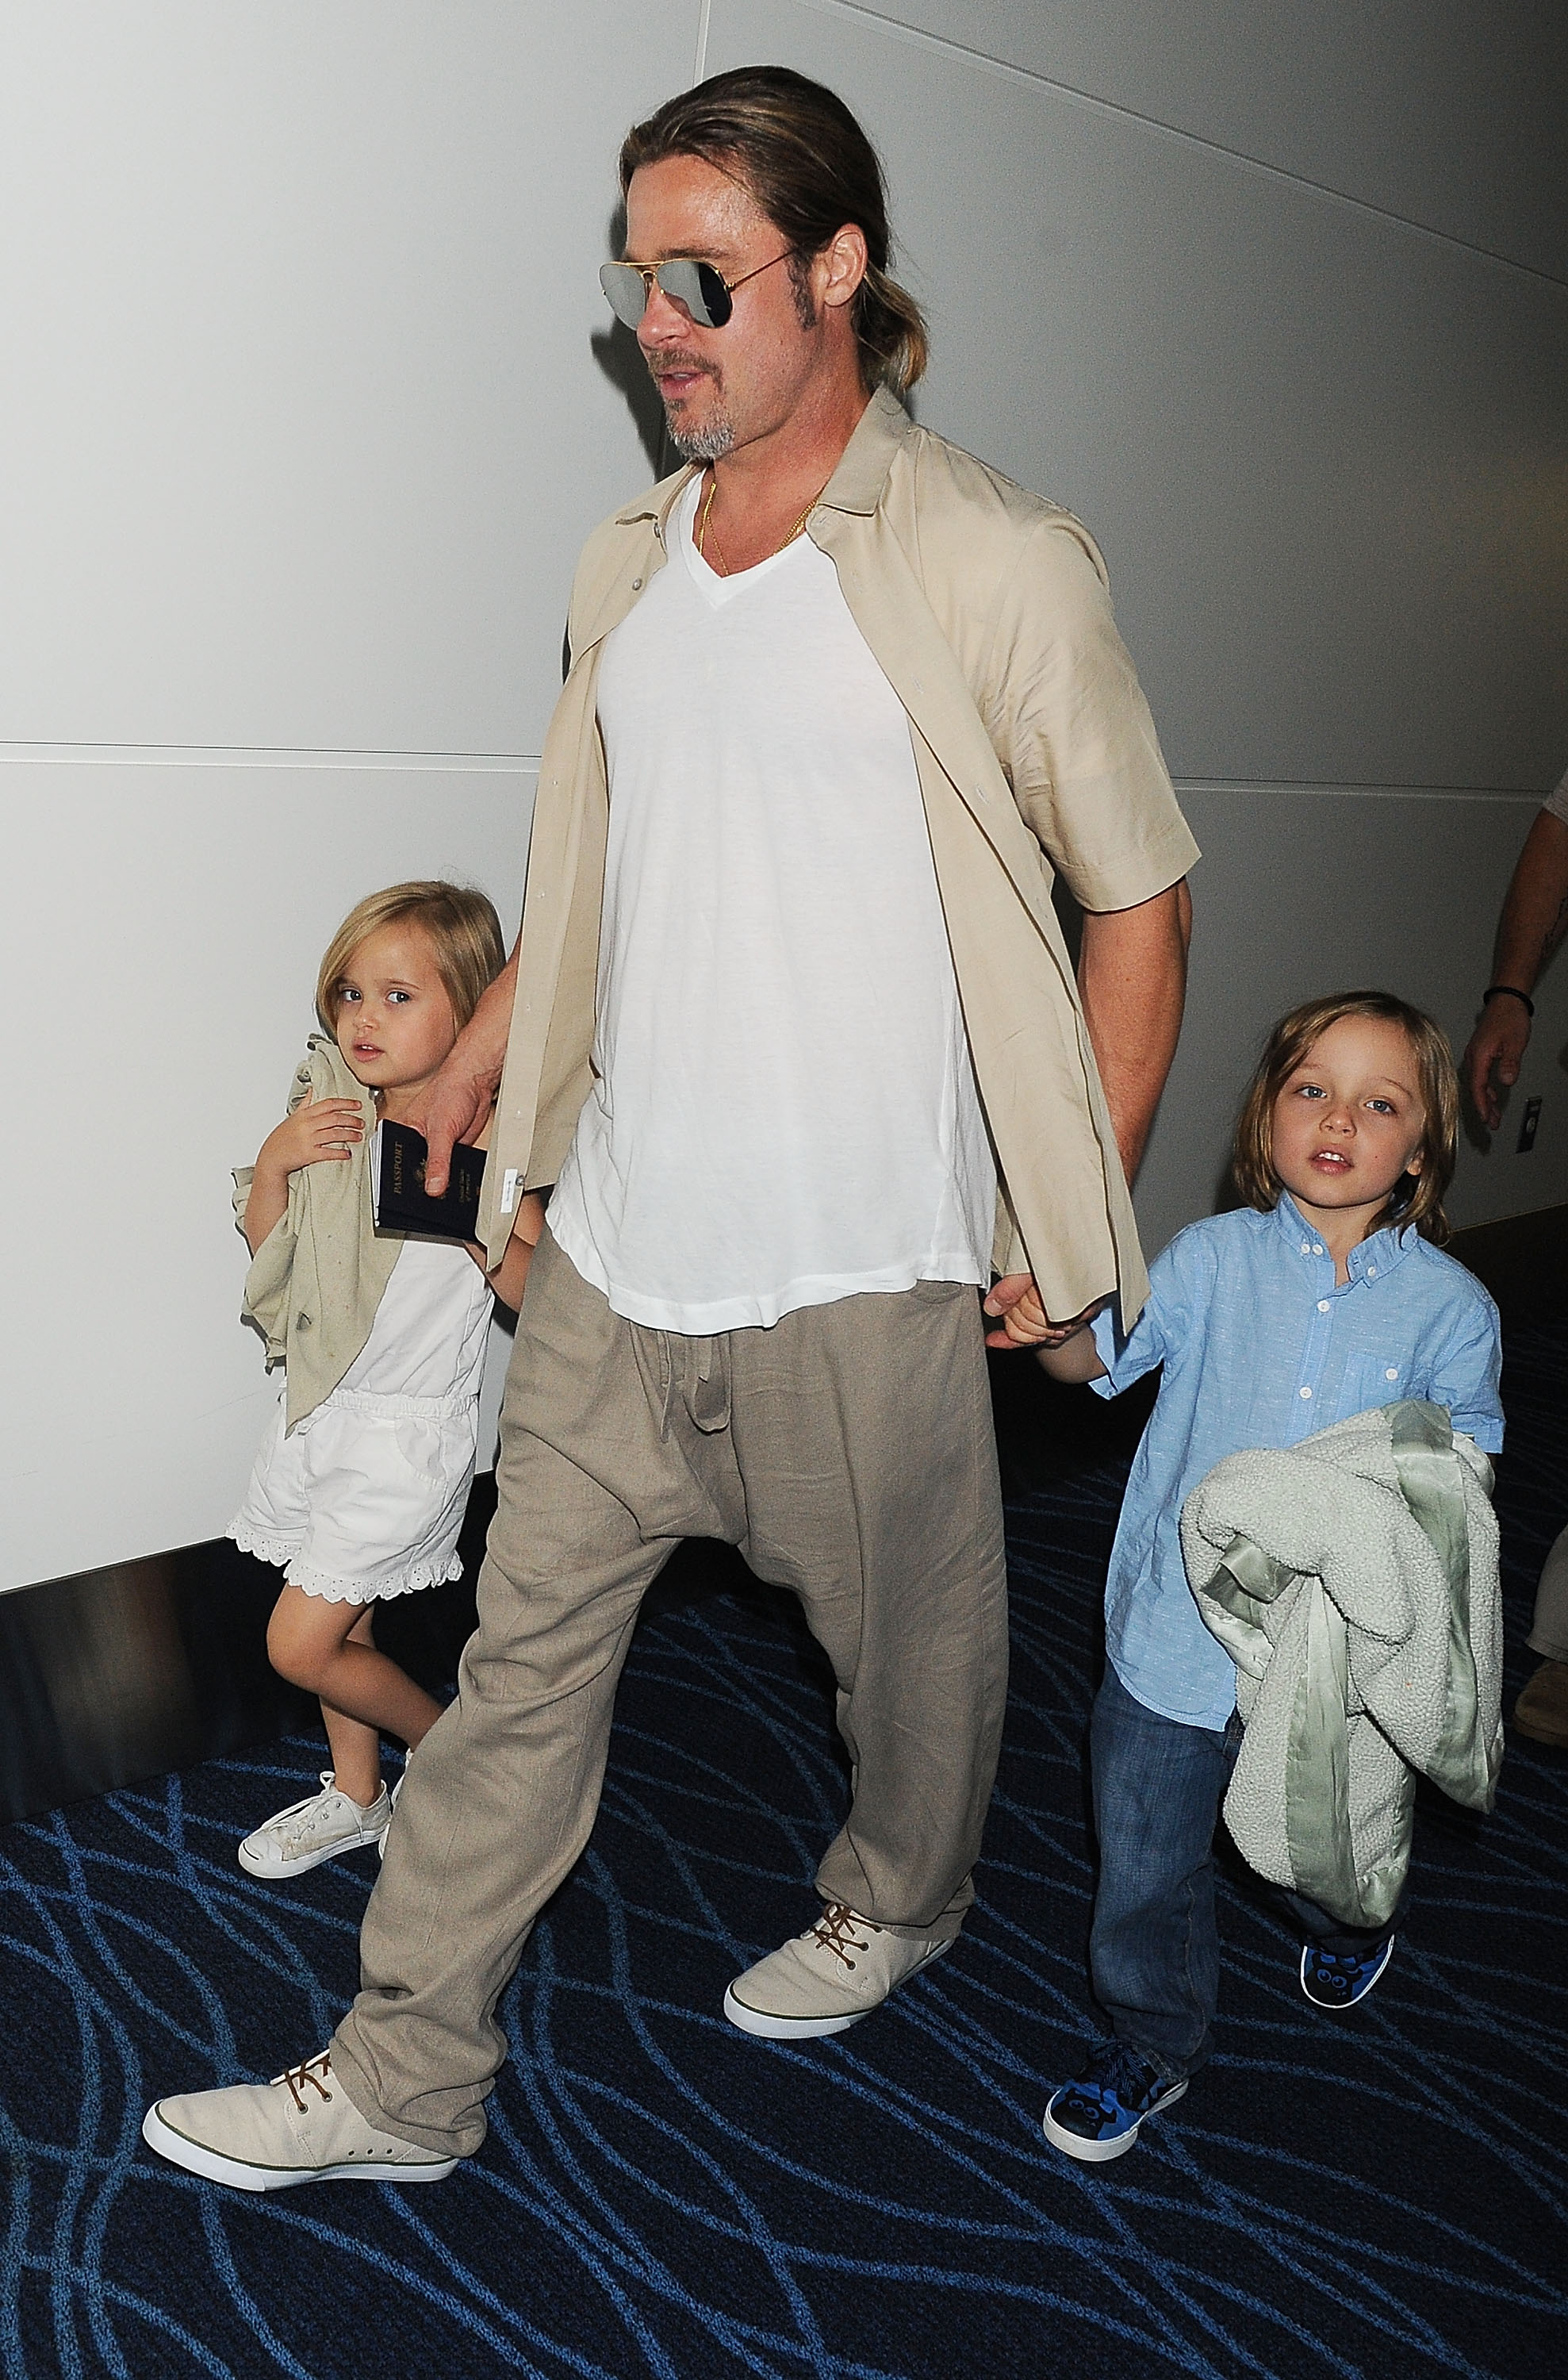 Brad Pitt und seine Zwillingskinder Knox und Vivienne Jolie-Pitt am 30. Juli 2013 in Tokio, Japan | Quelle: Getty Images